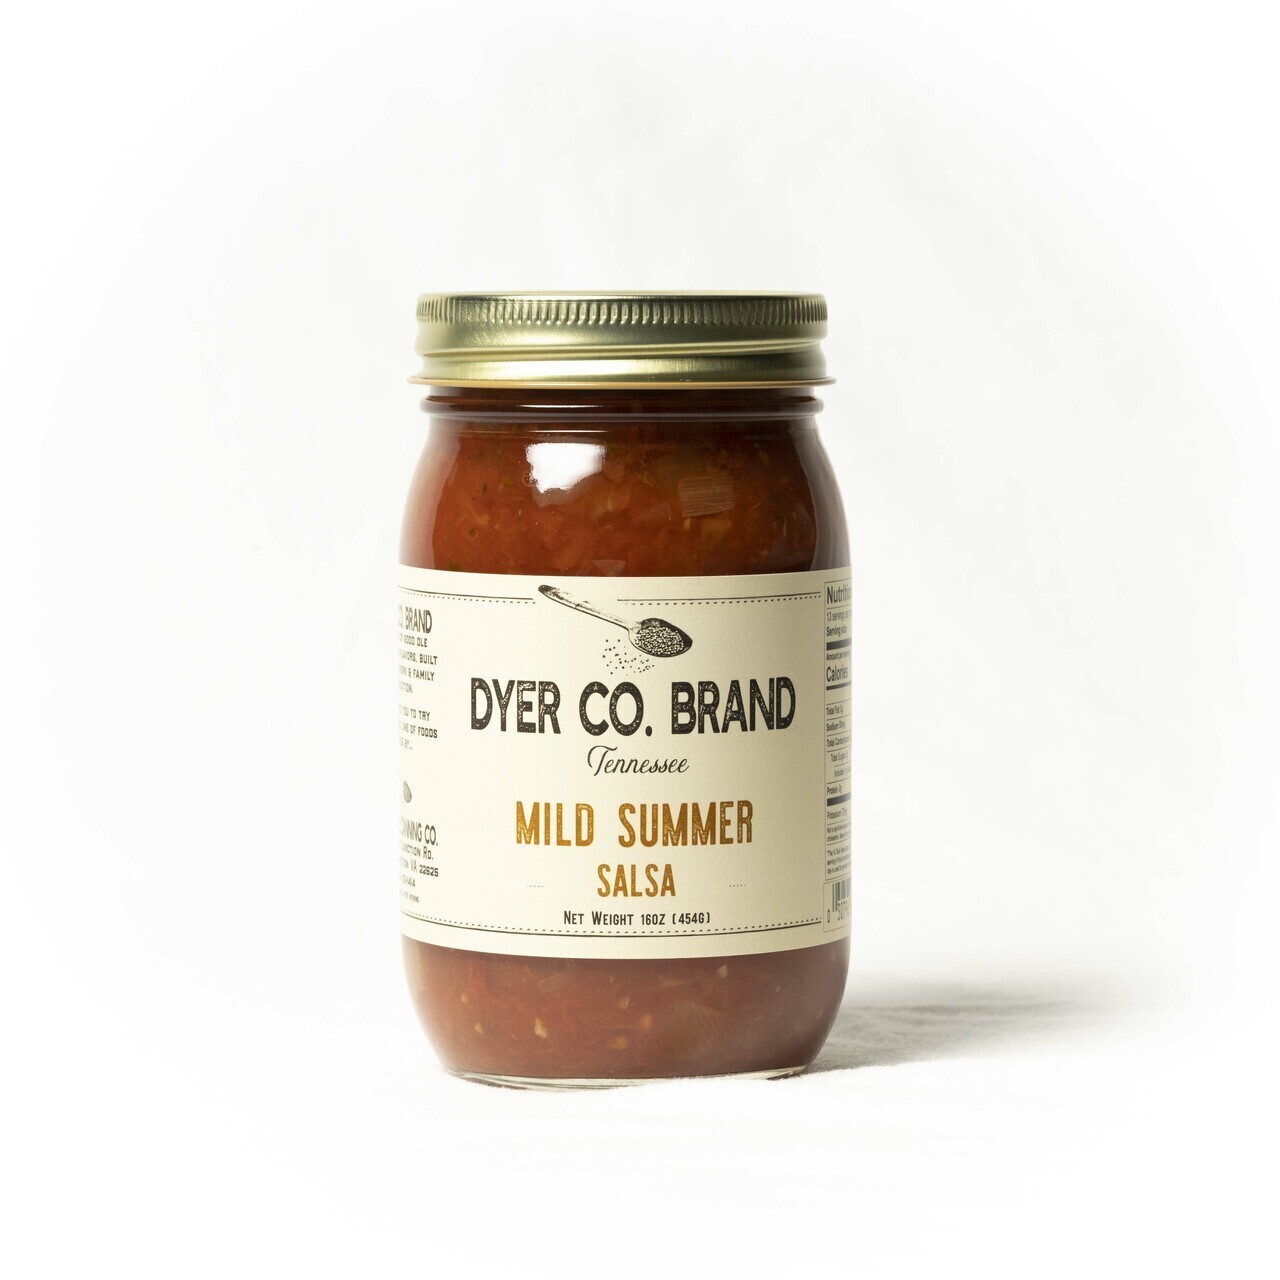 Dyer Co Brand Mild Summer Salsa